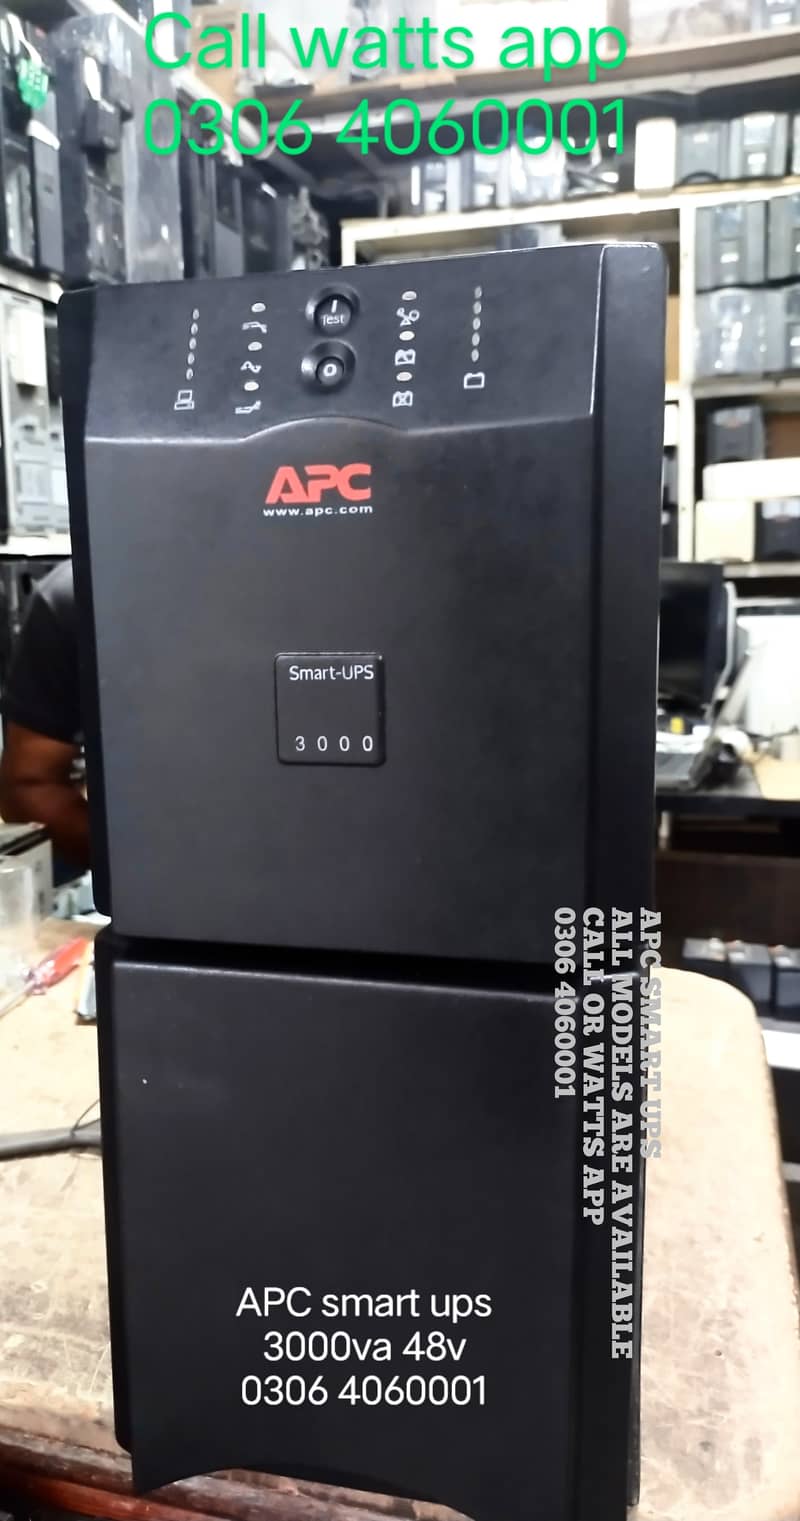 APC SMART UPS 3000va 48v 2700watt pure sine wave ups 5